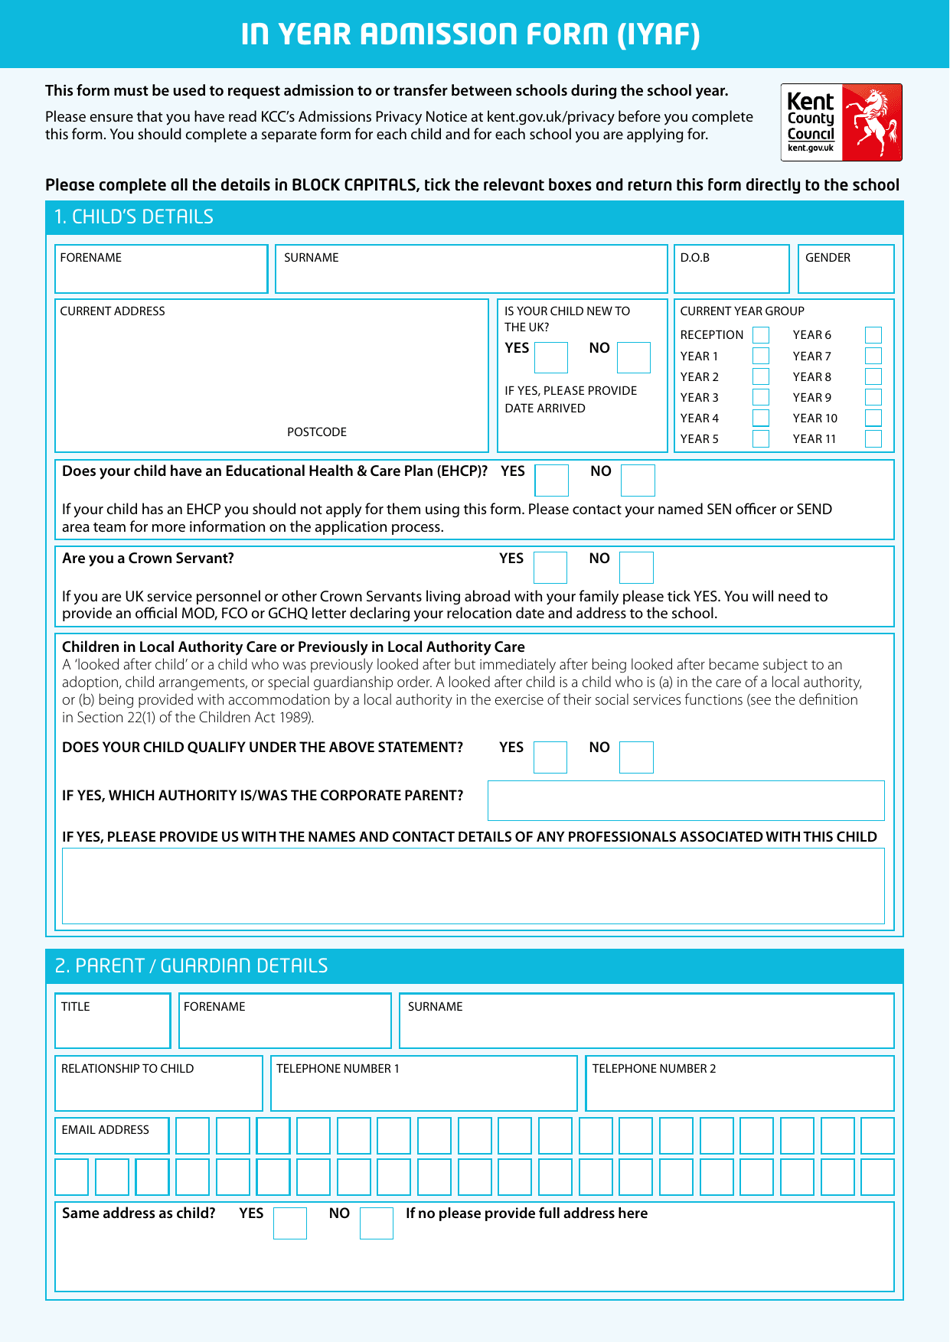 In Year Admission Form (Iyaf) - Kent, United Kingdom, Page 1